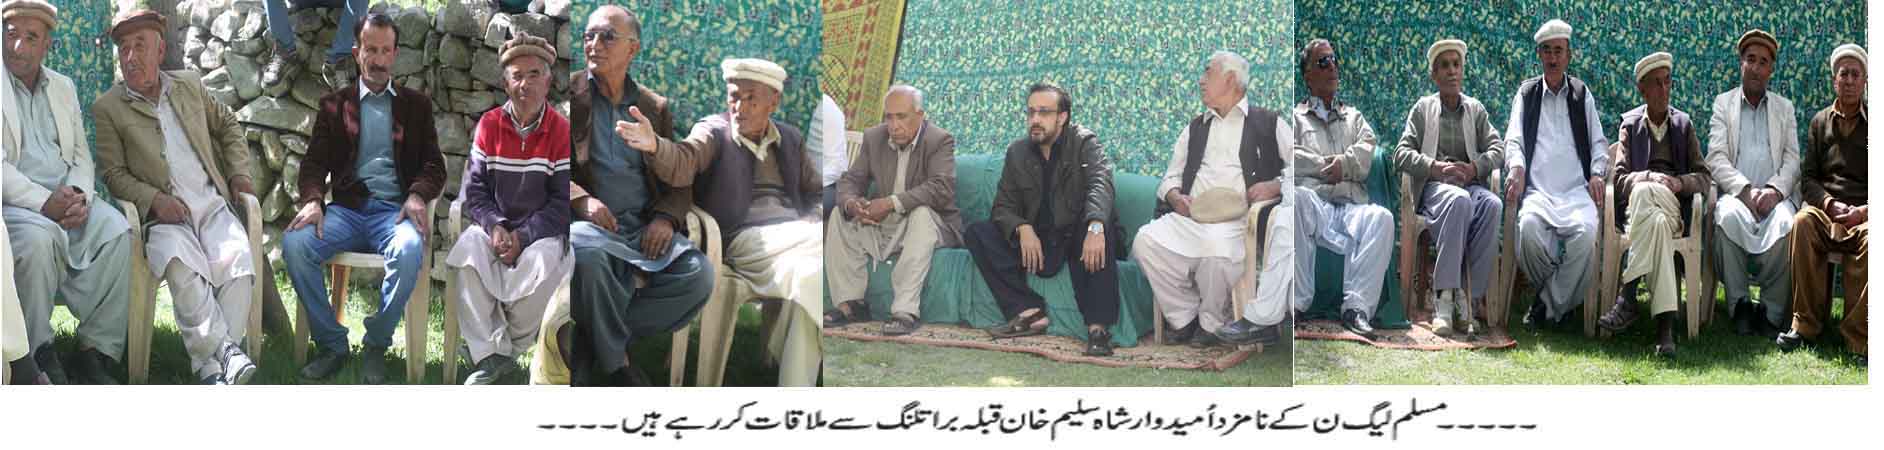 مسلم لیگ ن کے نامزد امیدوار شاہ سلیم خان نے براتلنگ قبیلے کے اکابرین سے انتخابی مہم کے سلسلے میں ملاقات کی